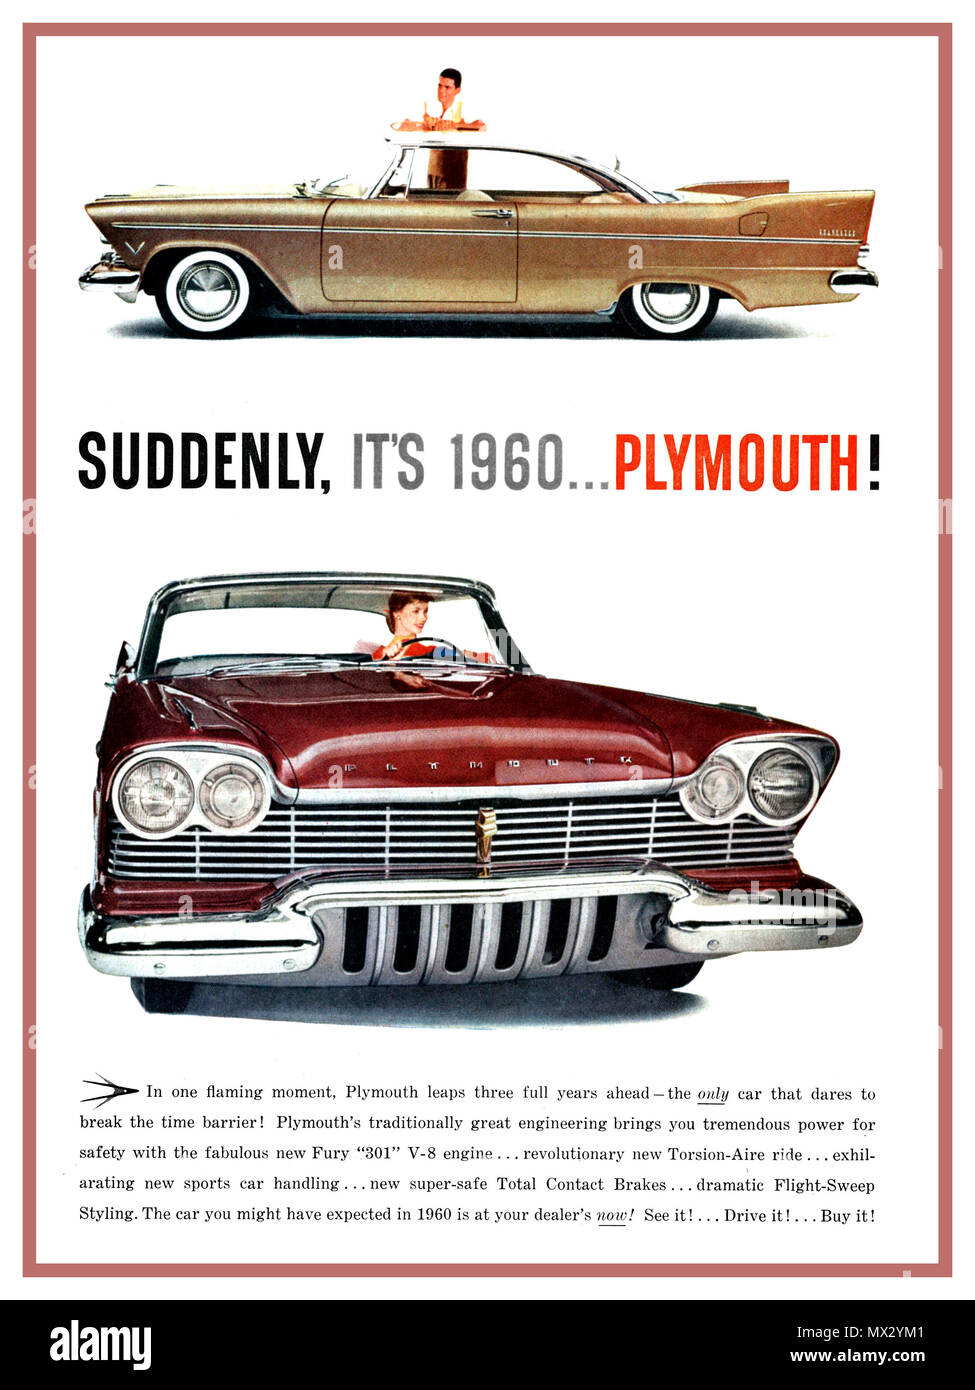 1960 Plymouth Automobile Automobile Automobile Vintage American Magazine Press Pubblicità improvvisamente è 1960 PLYMOUTH ! Chrome Grill pinne posteriori styling degli anni sessanta con V8 Fury 301 potenza del motore Foto Stock